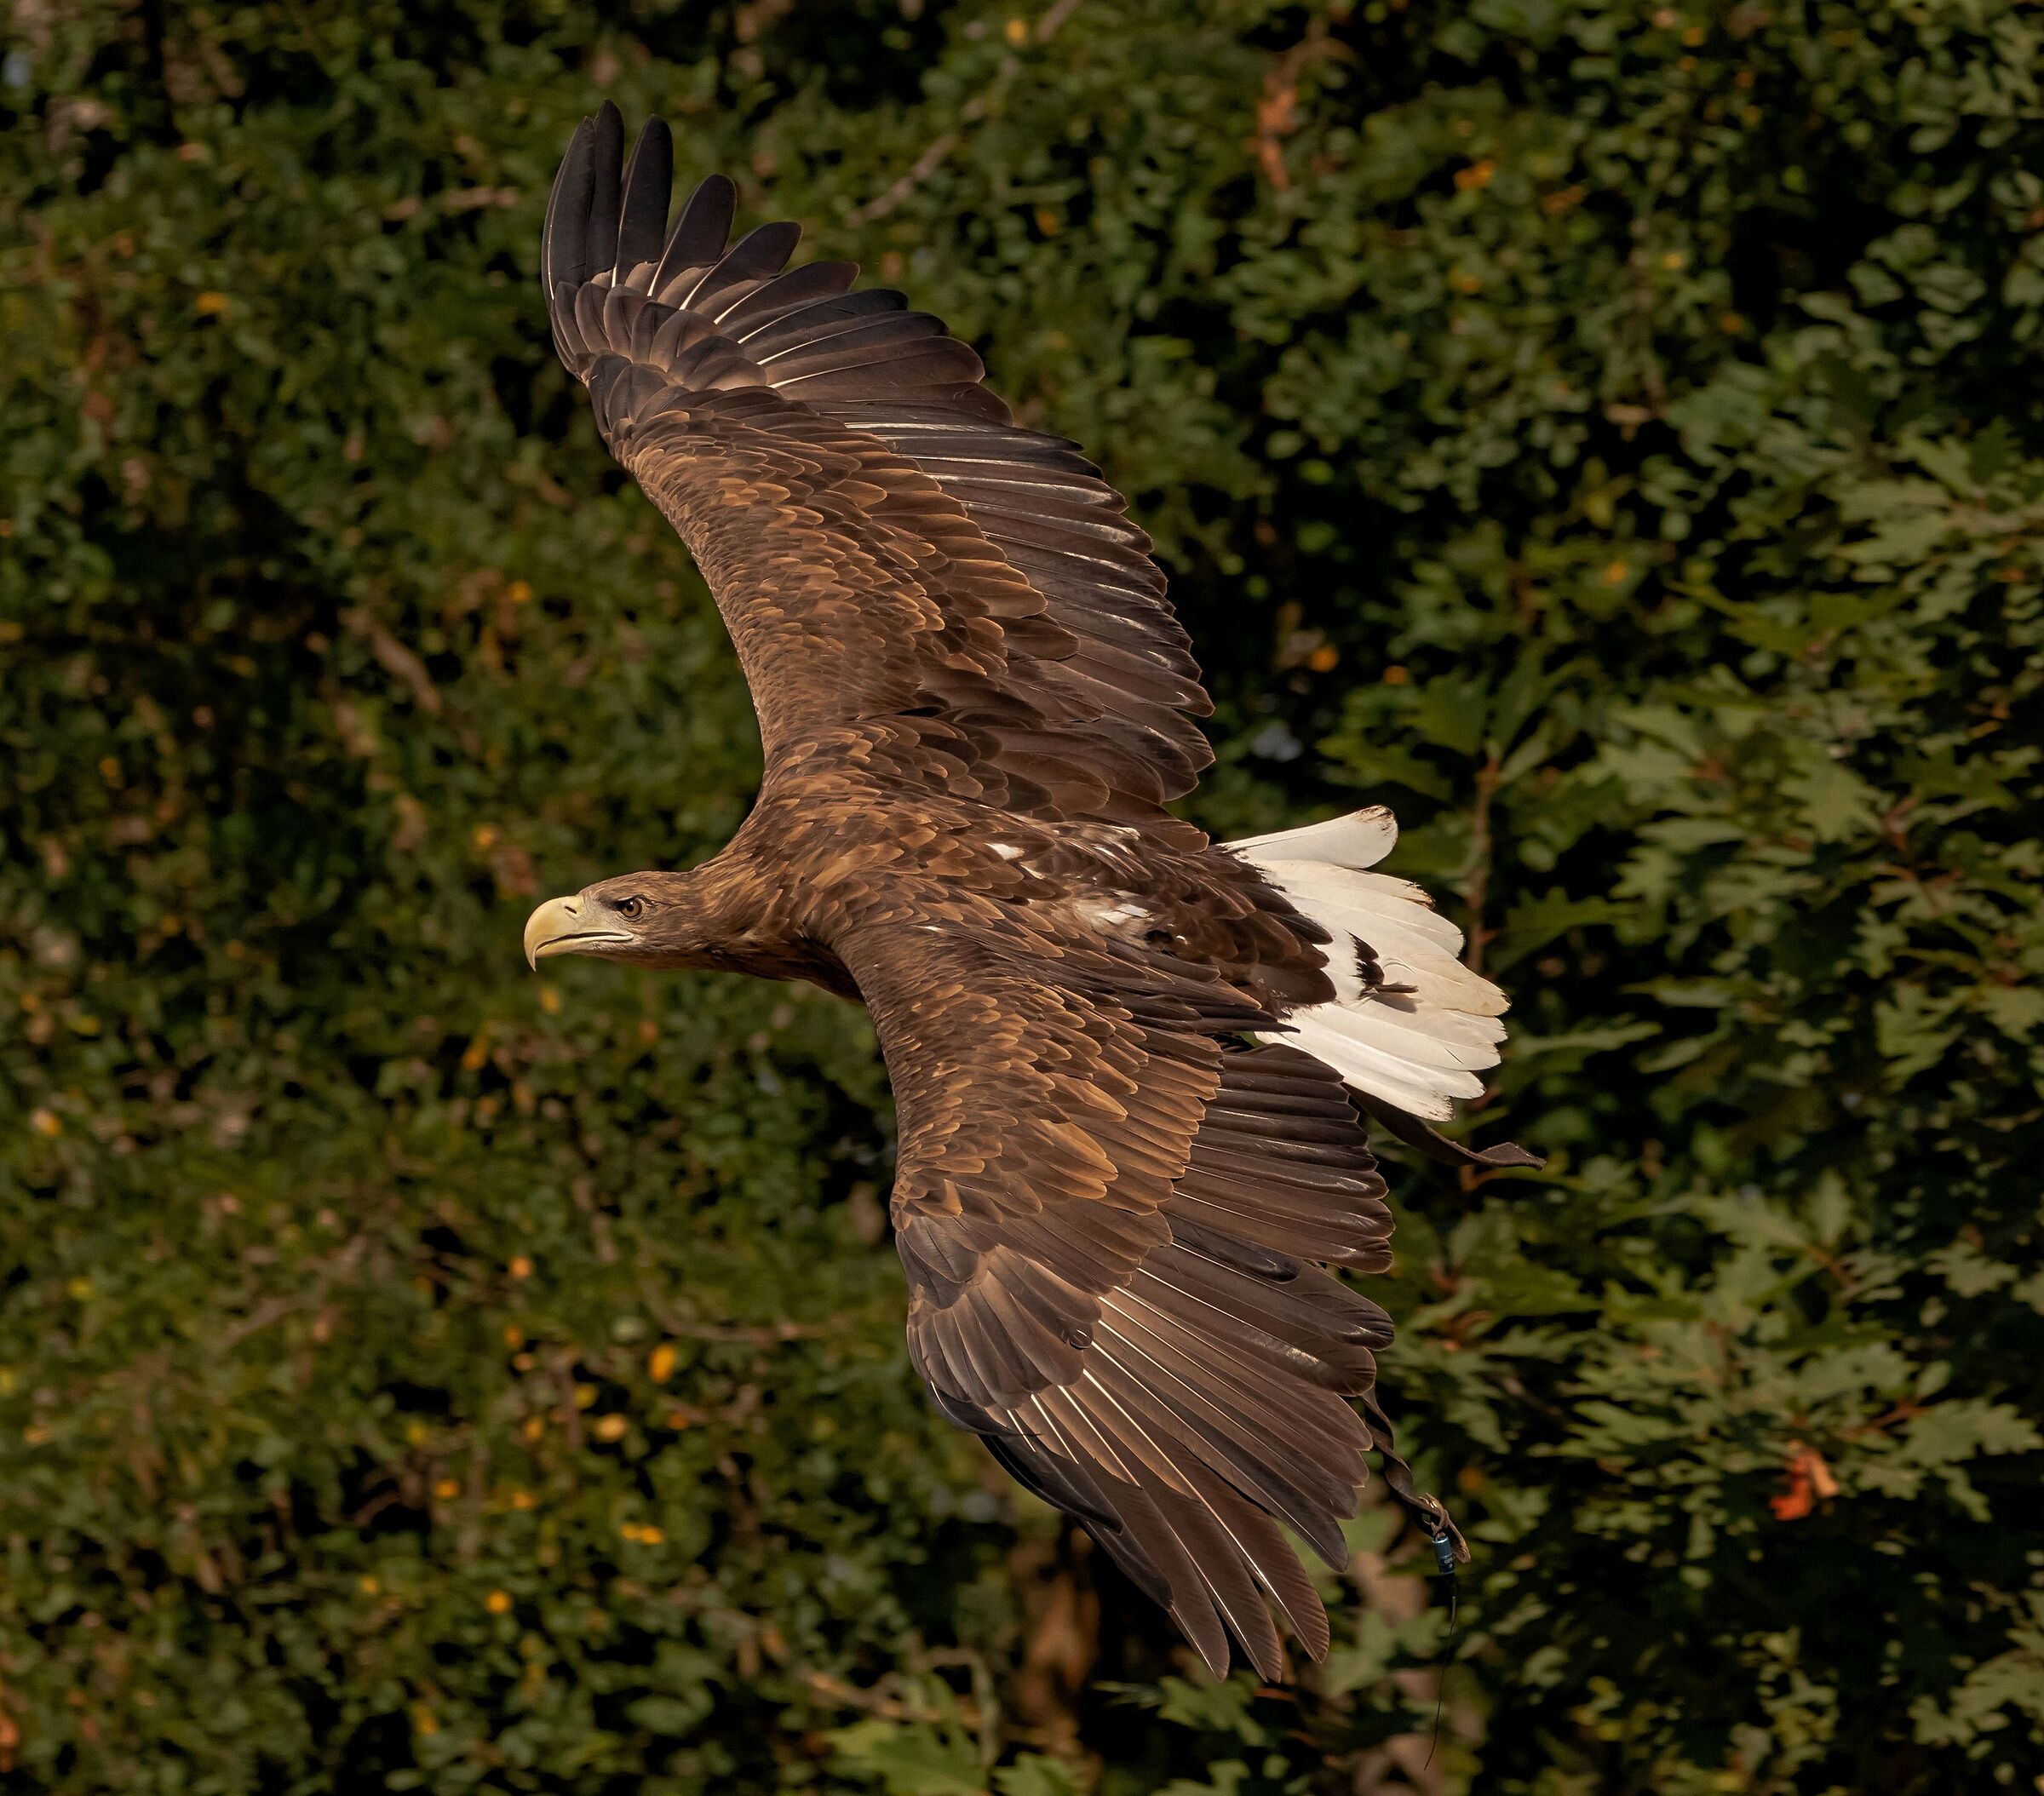 Sea eagle in flight 12/08/2021 Oasi Sant'Alessio(pv)...